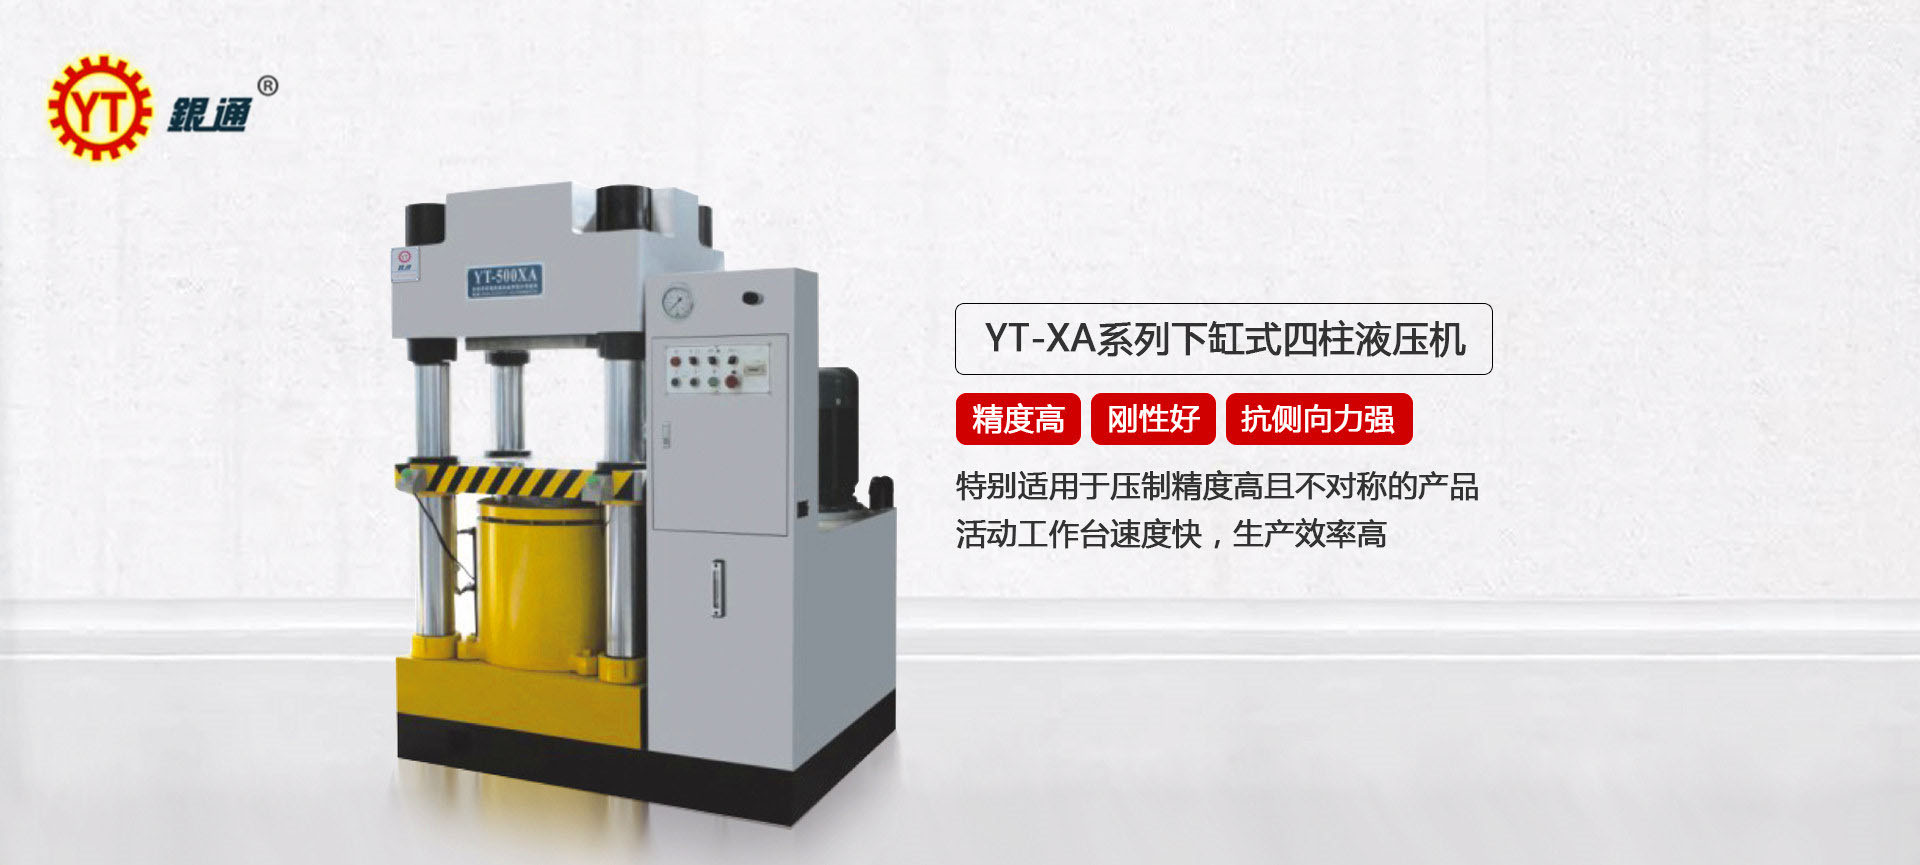 YT-X系列200吨四柱油压机